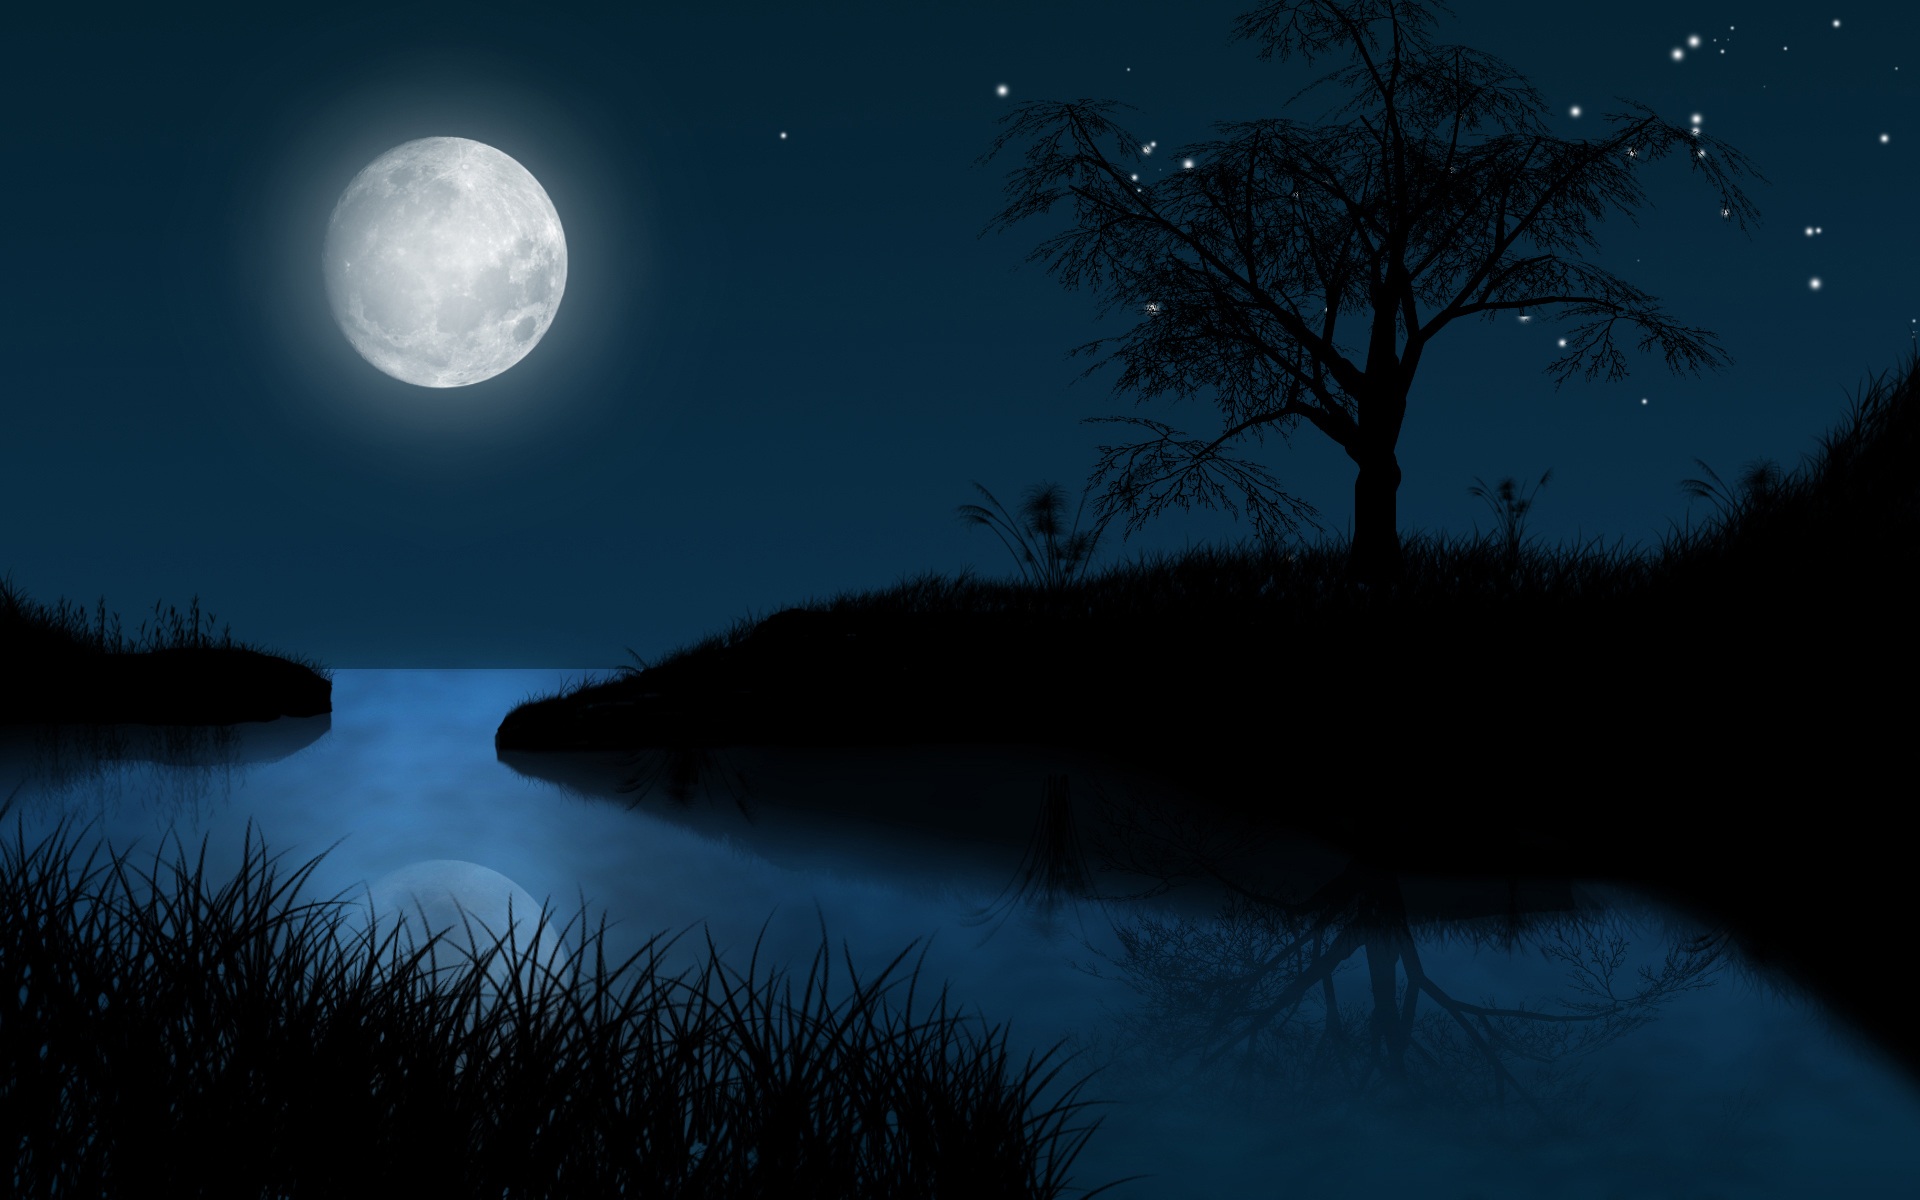 full-moon-night-wallpapers-61454-4662491.jpg